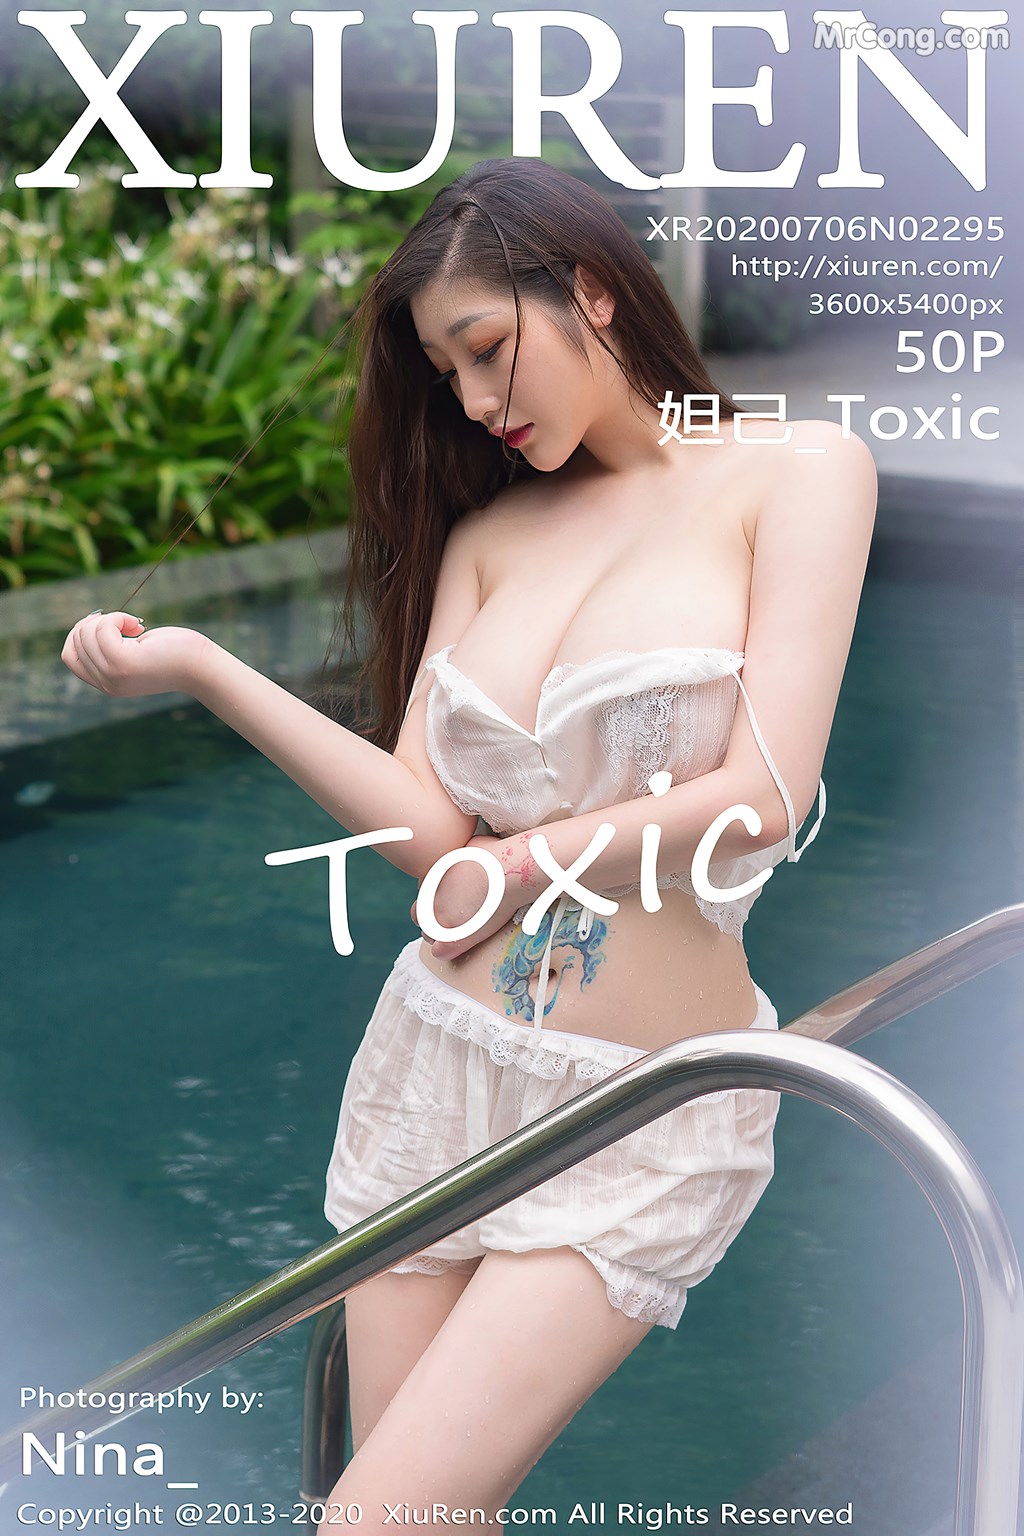 [XIUREN] No.2295 Daji_Toxic 妲己_Toxic Cover Photo